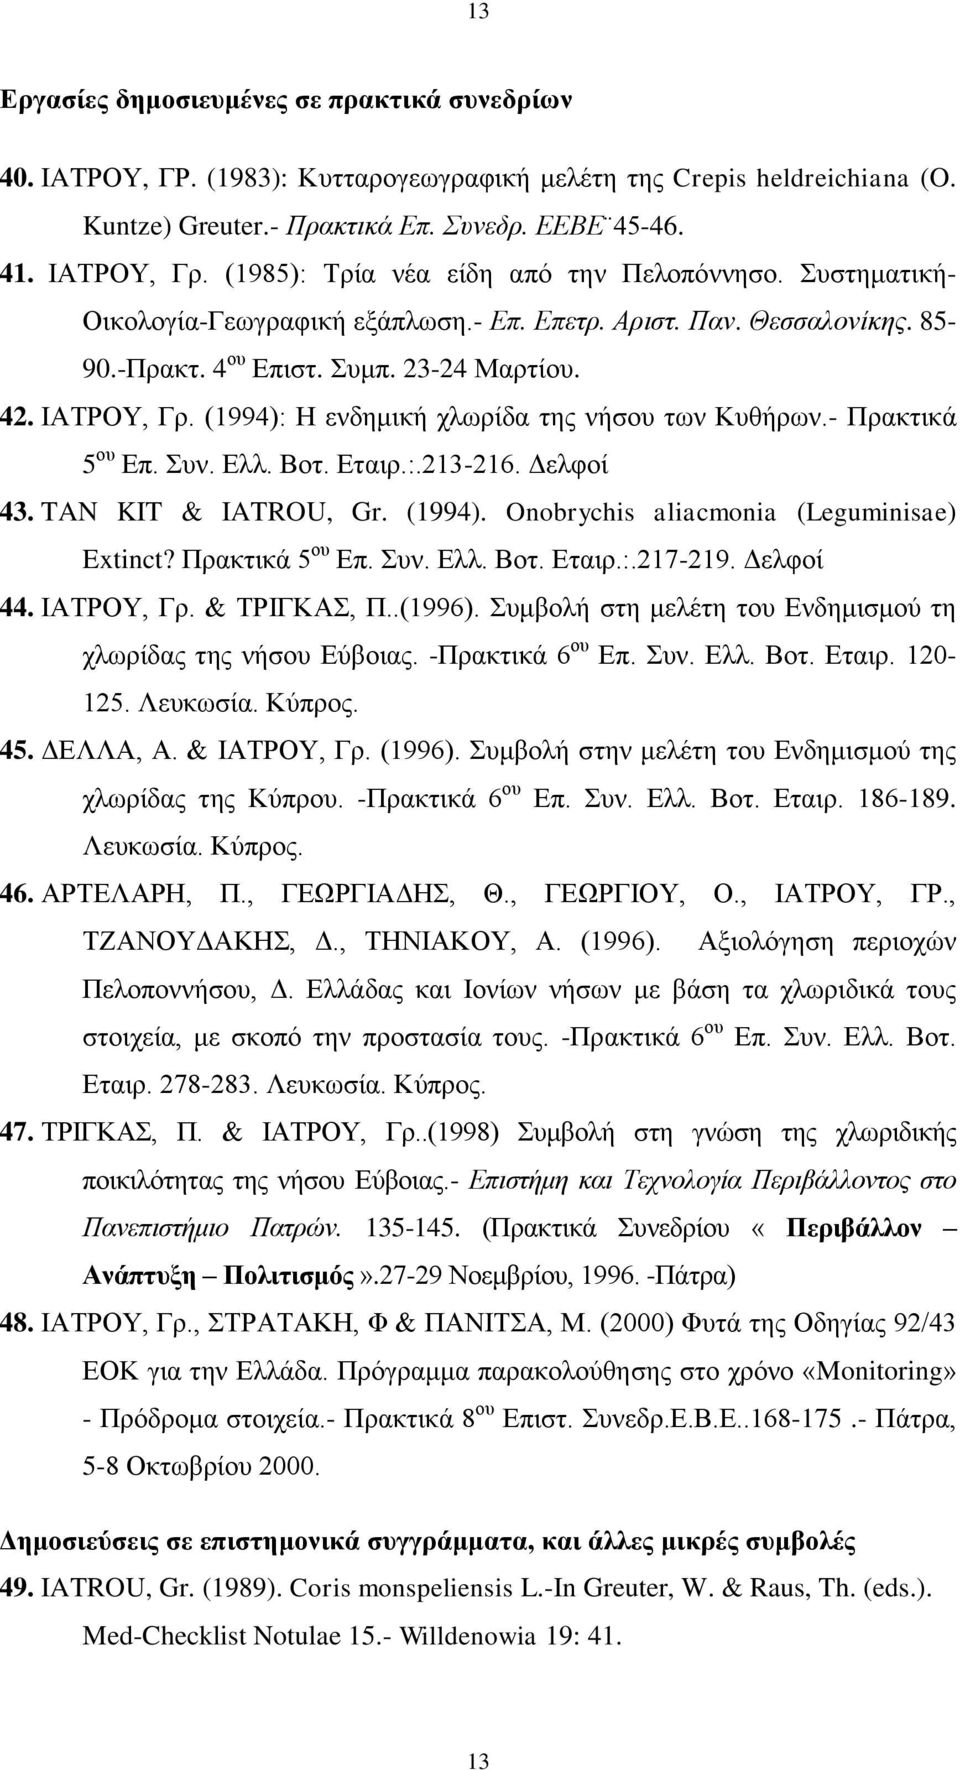 (1994): Η ενδημική χλωρίδα της νήσου των Κυθήρων.- Πρακτικά 5 ου Επ. Συν. Ελλ. Βοτ. Εταιρ.:.213-216. Δελφοί 43. TAN KIT & IATROU, Gr. (1994). Onobrychis aliacmonia (Leguminisae) Extinct?